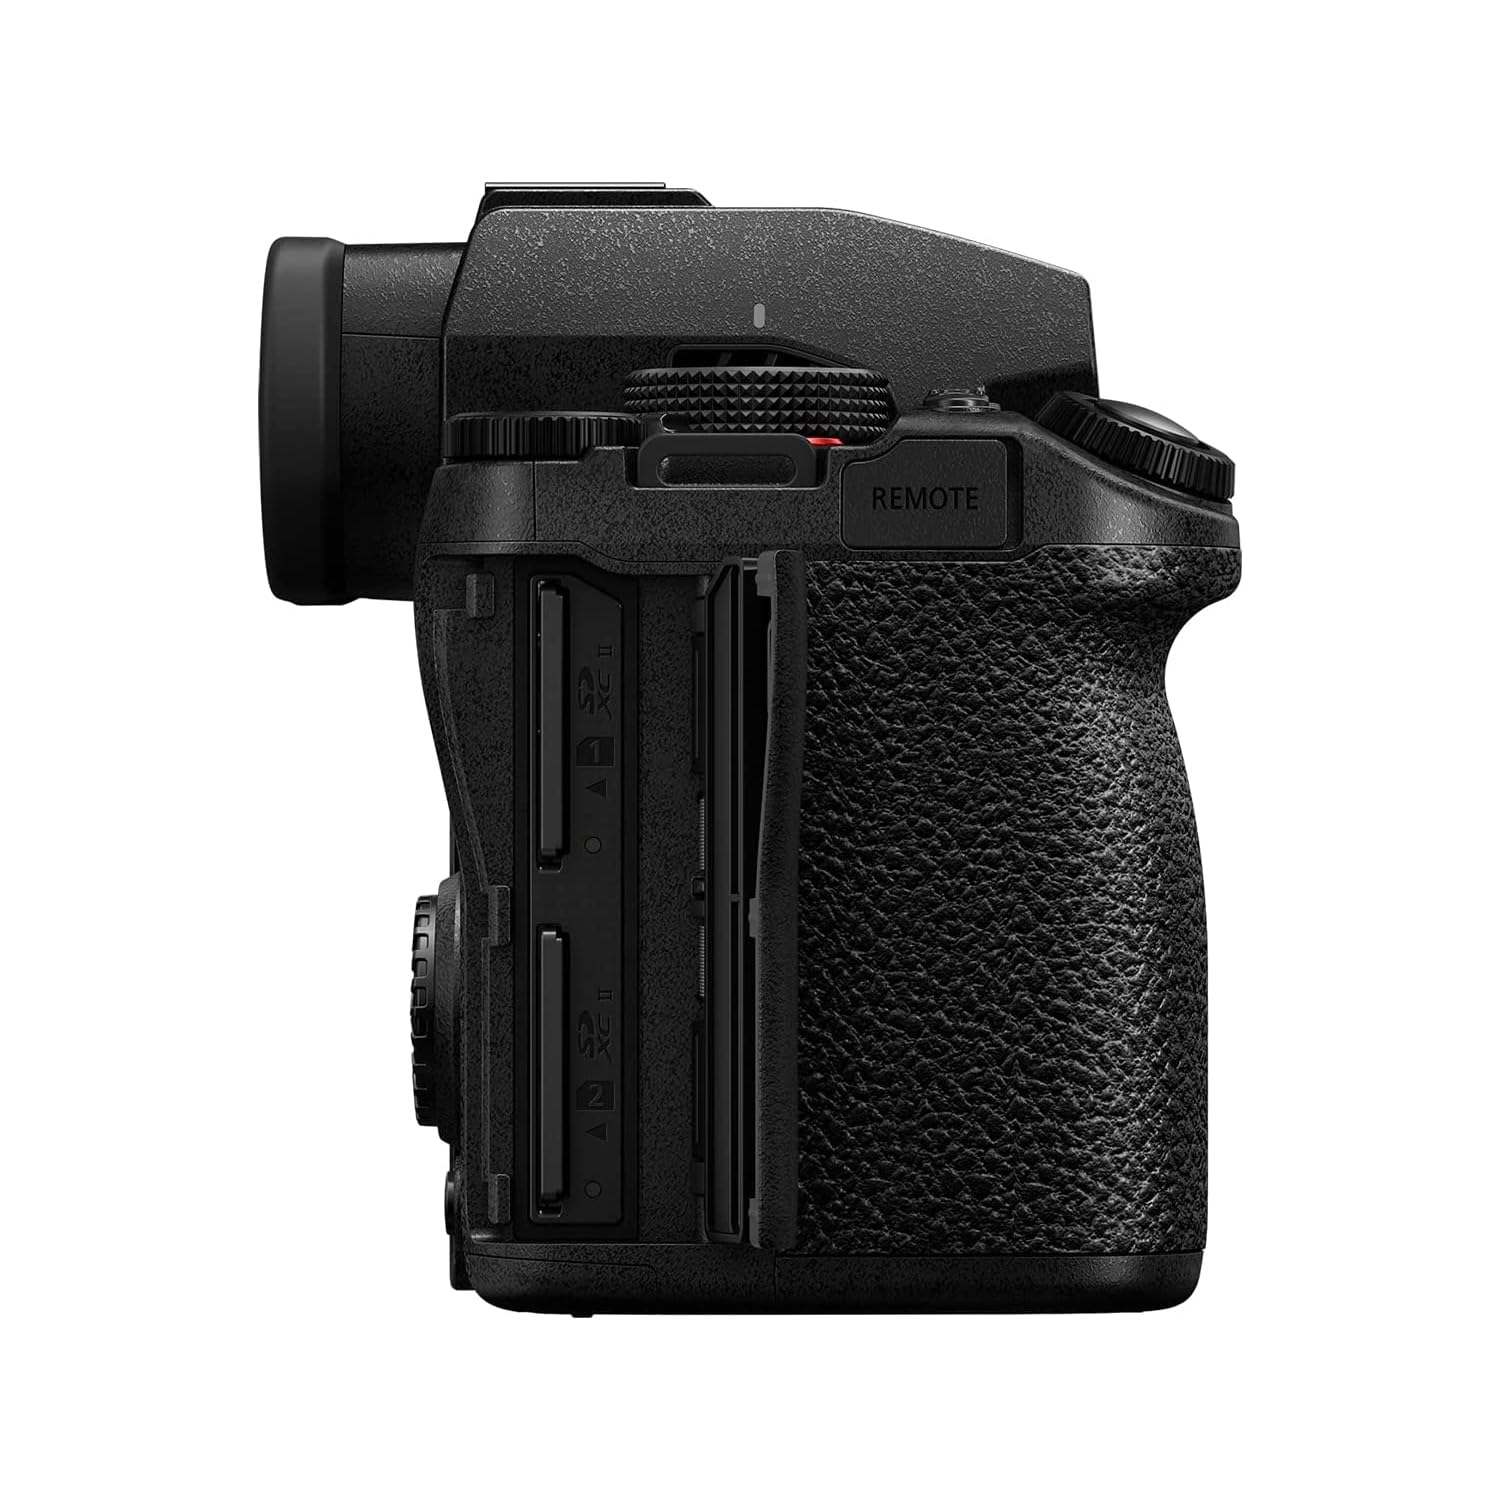 Panasonic LUMIX S5IIX Mirrorless Camera (DC-S5M2XKK) with LUMIX S Series 70-300mm Lens (S-R70300)